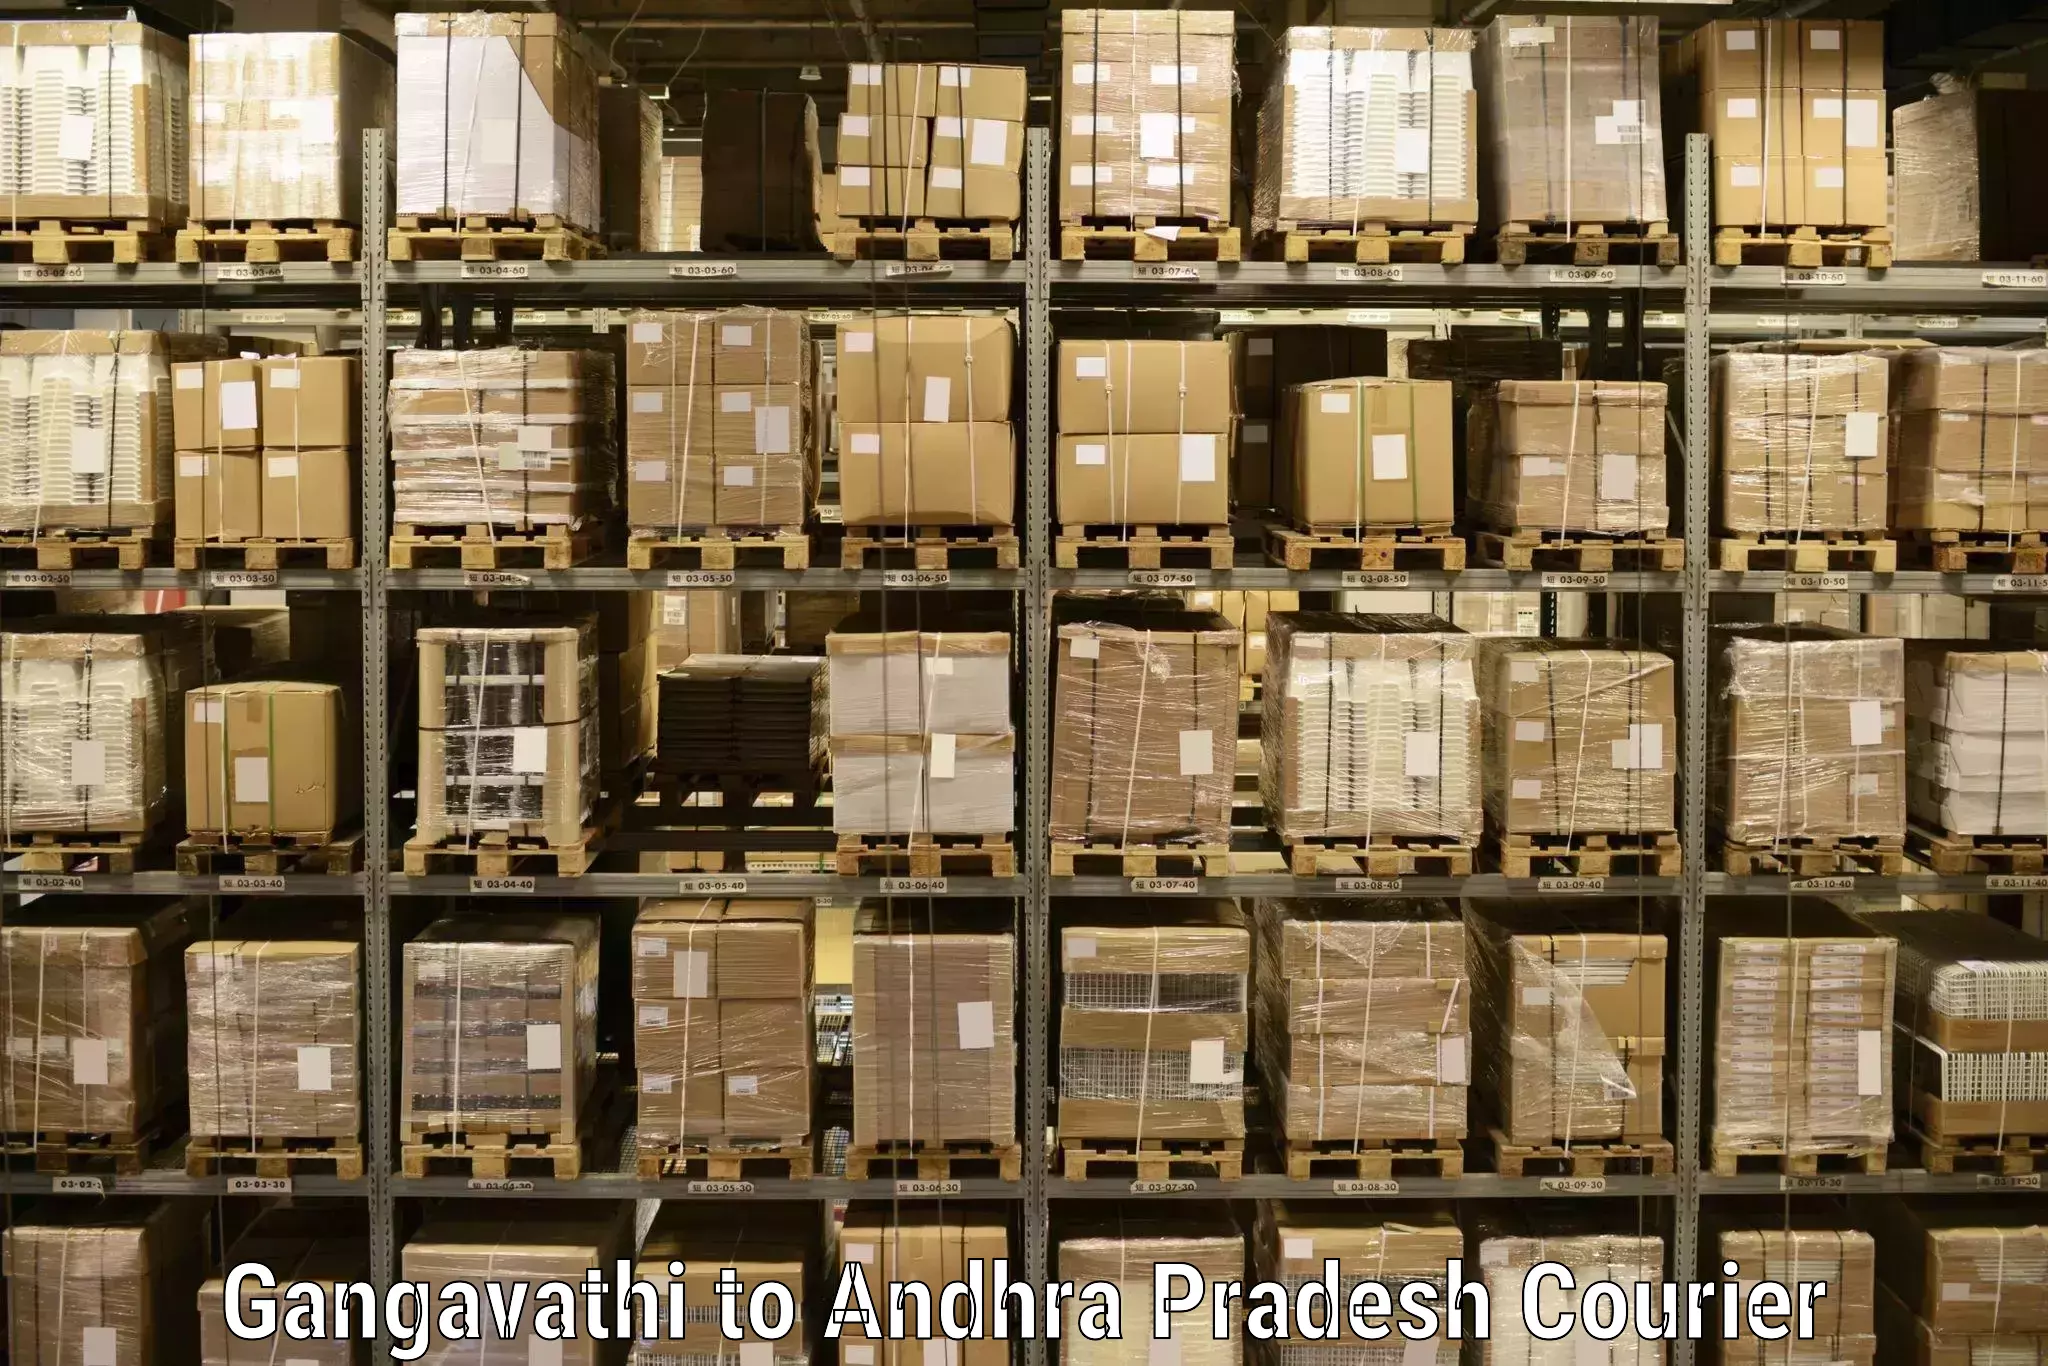 Flexible delivery scheduling Gangavathi to Bapatla